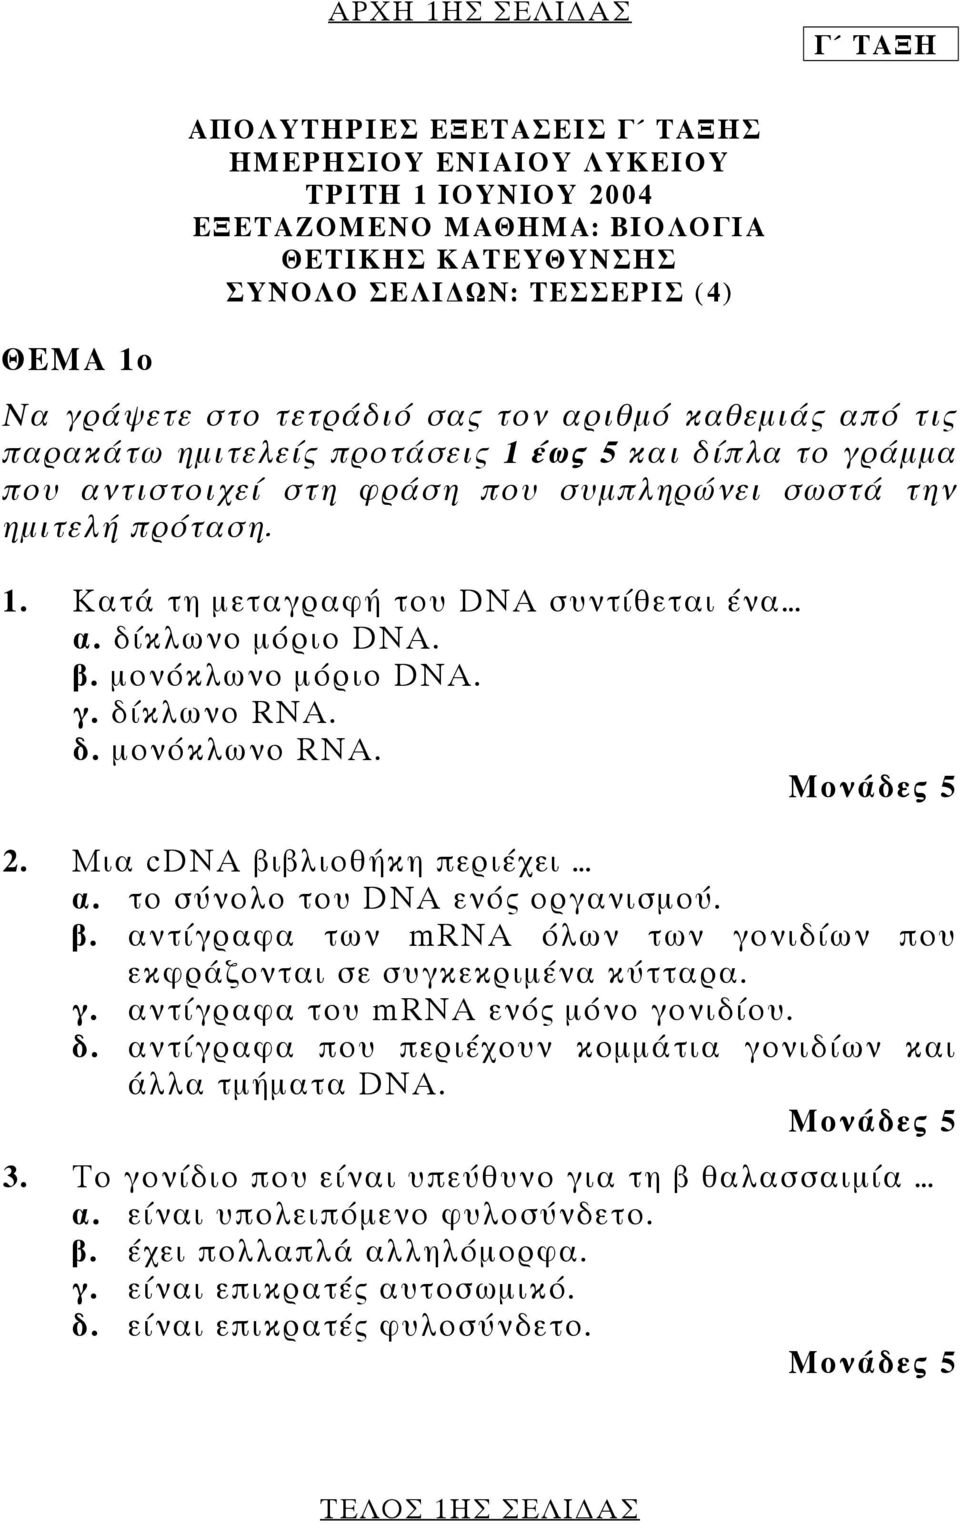 δίκλωνο µόριο DNA. β. µονόκλωνο µόριο DNA. γ. δίκλωνο RNA. δ. µονόκλωνο RNA. 2. Μια cdna βιβλιοθήκη περιέχει α. το σύνολο του DNA ενός οργανισµού. β. αντίγραφα των mrna όλων των γονιδίων που εκφράζονται σε συγκεκριµένα κύτταρα.